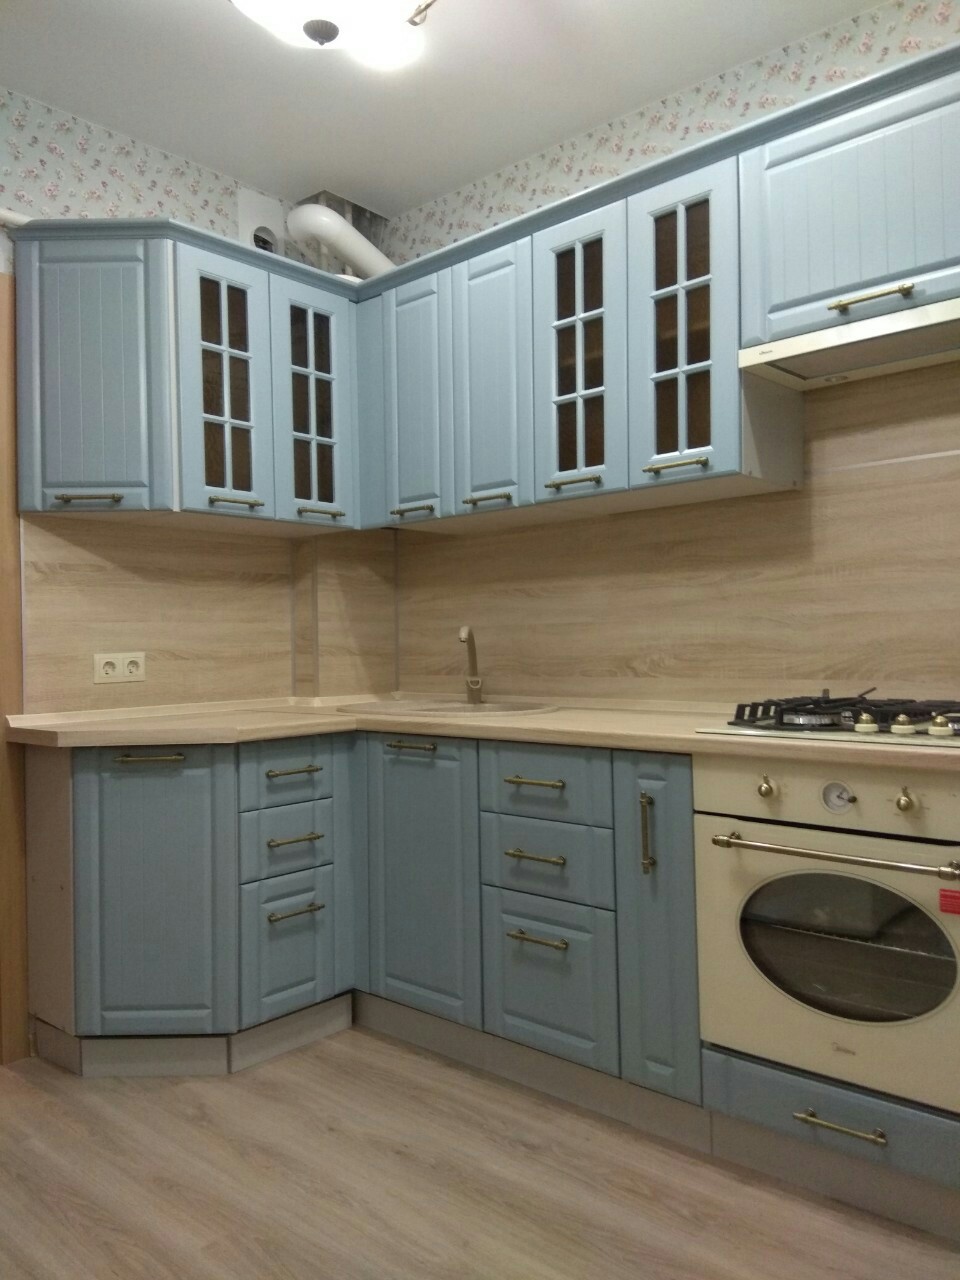 Кухонные модули подбираются индивидуально под ваши размеры. Купить кухню стало просто, оформление на дому.